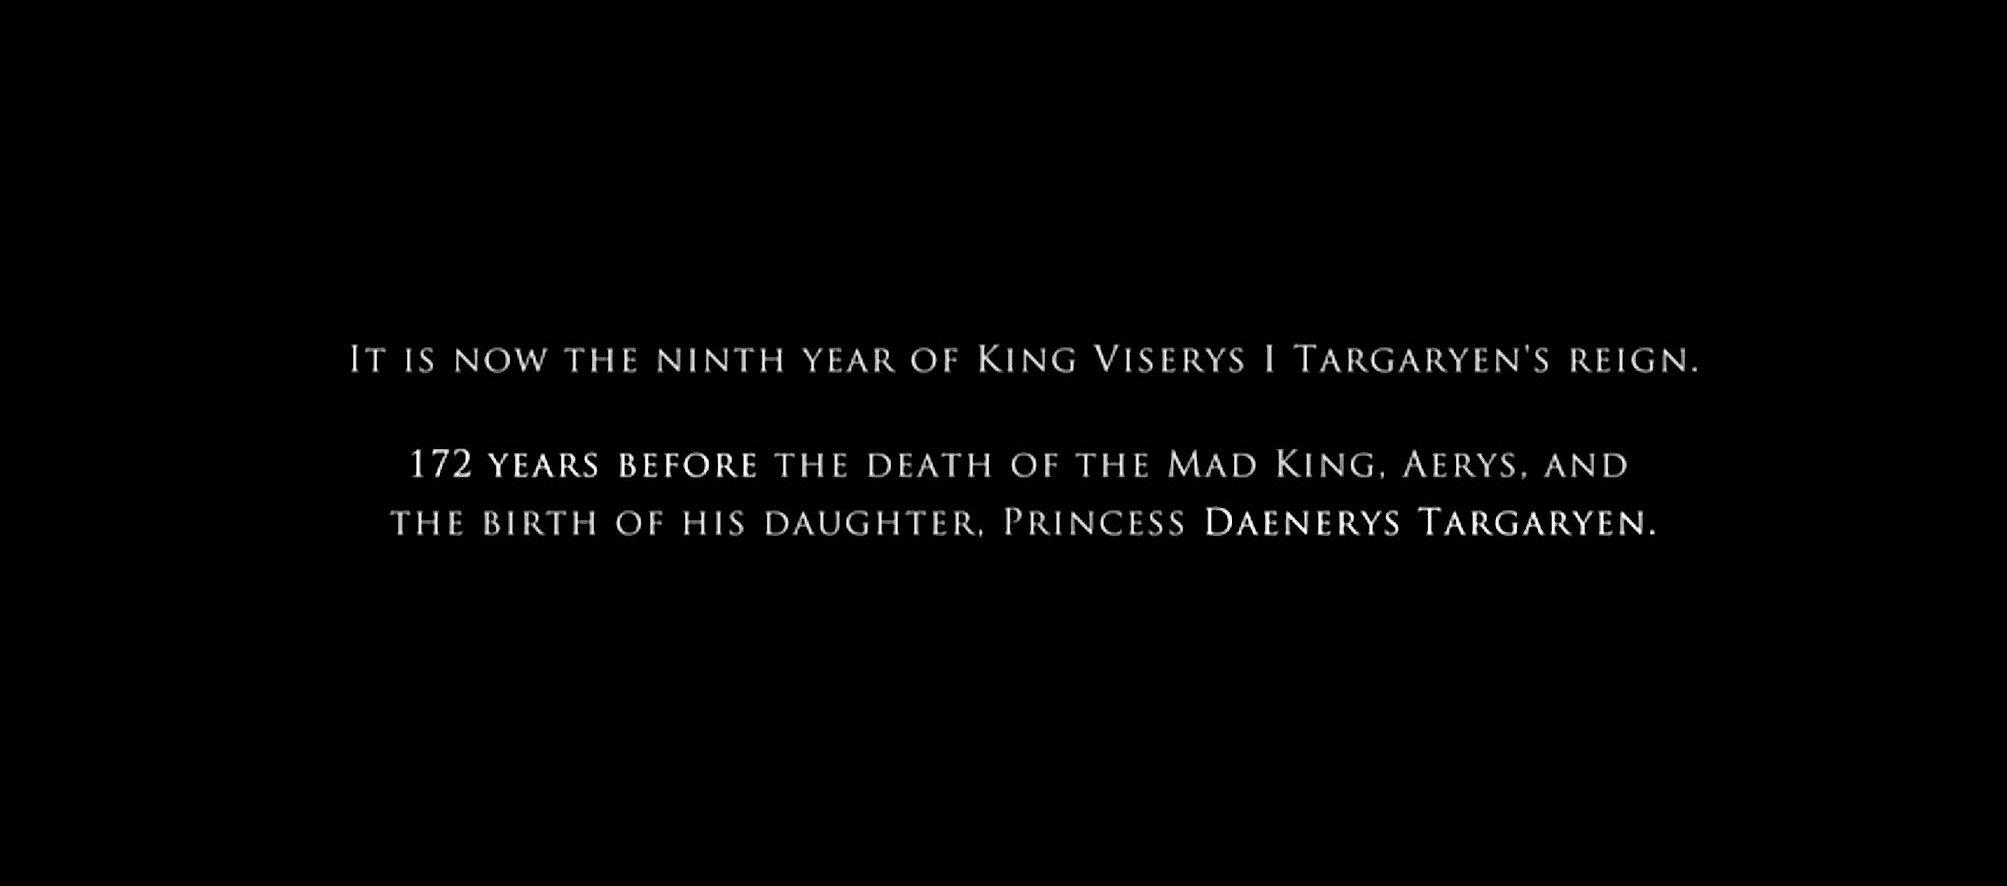 『ハウス・オブ・ザ・ドラゴン』はマッドキングの死と娘のデナーリス・ターガリエン誕生の172年前が舞台。